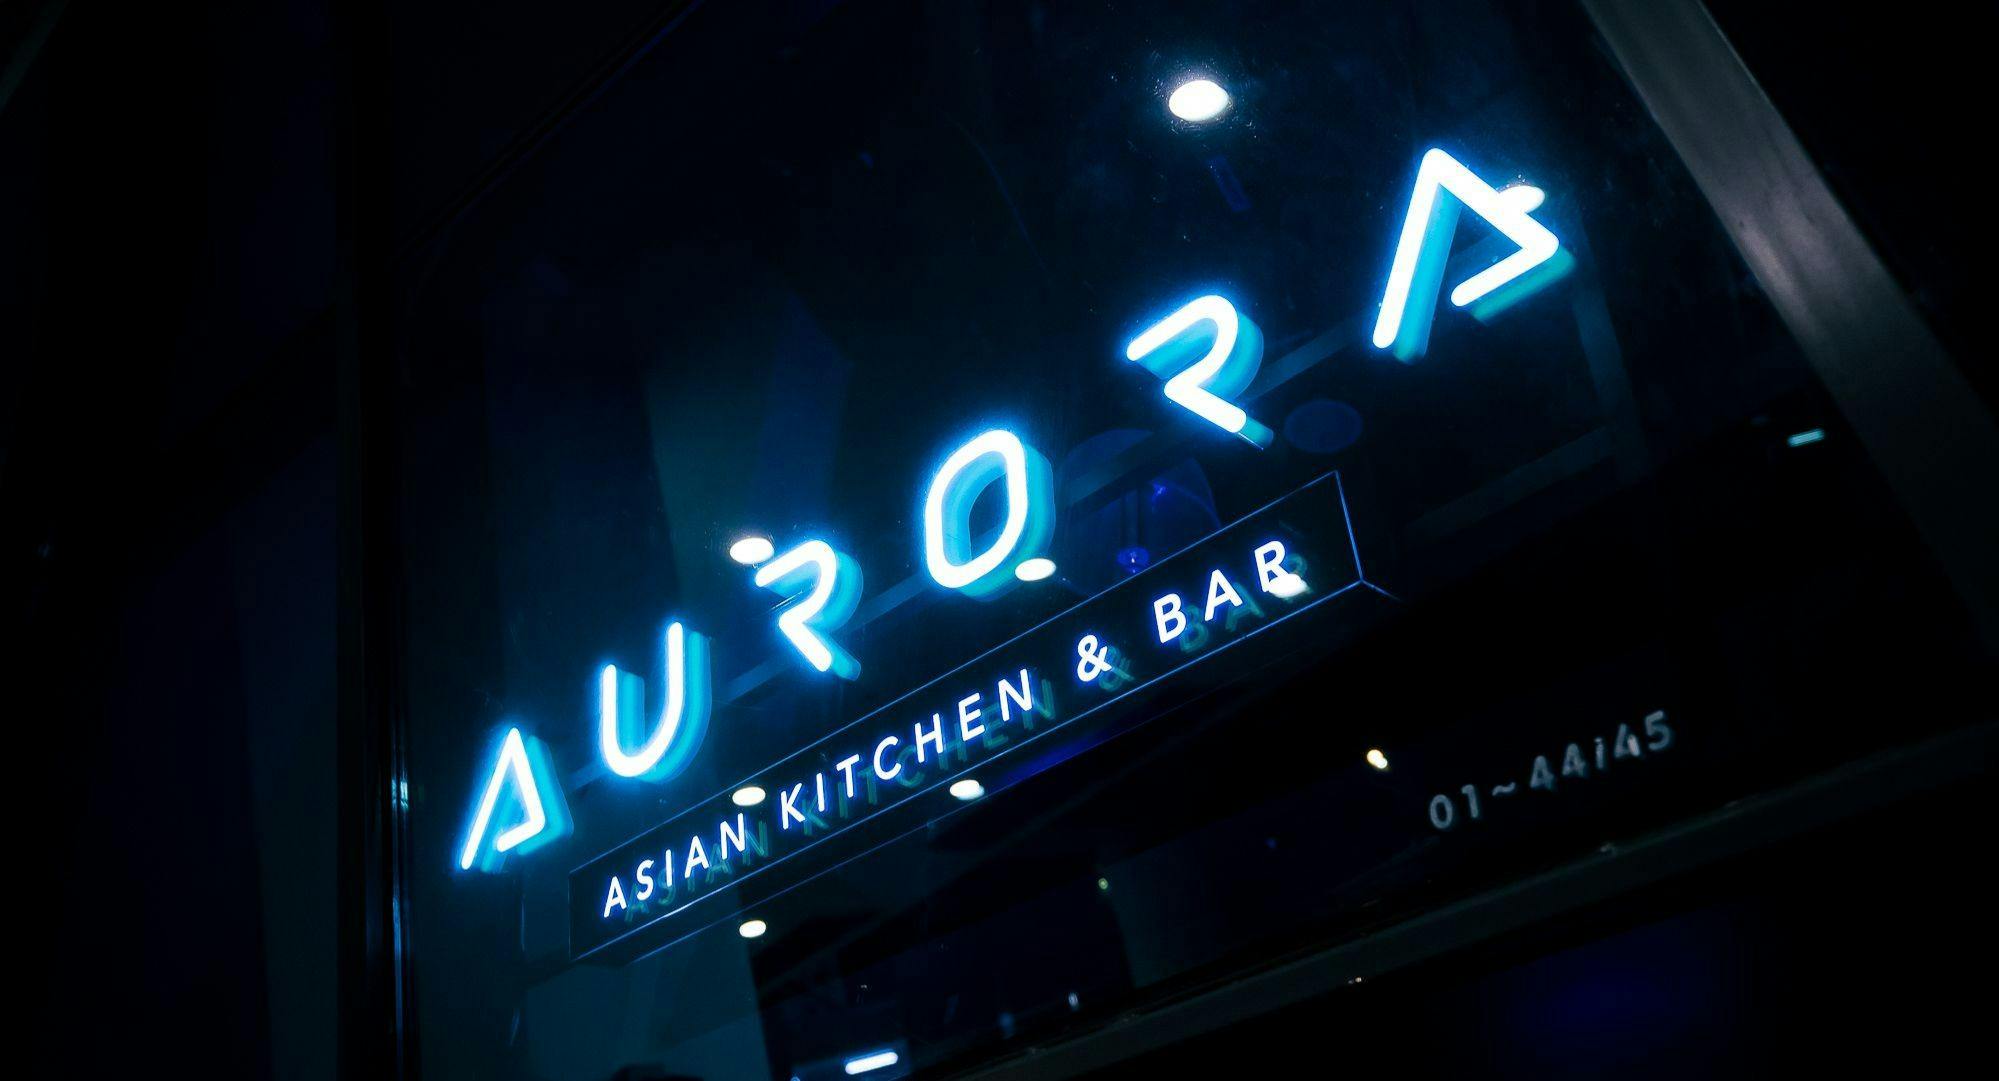 Photo of restaurant Aurora Asian Kitchen & Bar in Lavender, Singapore